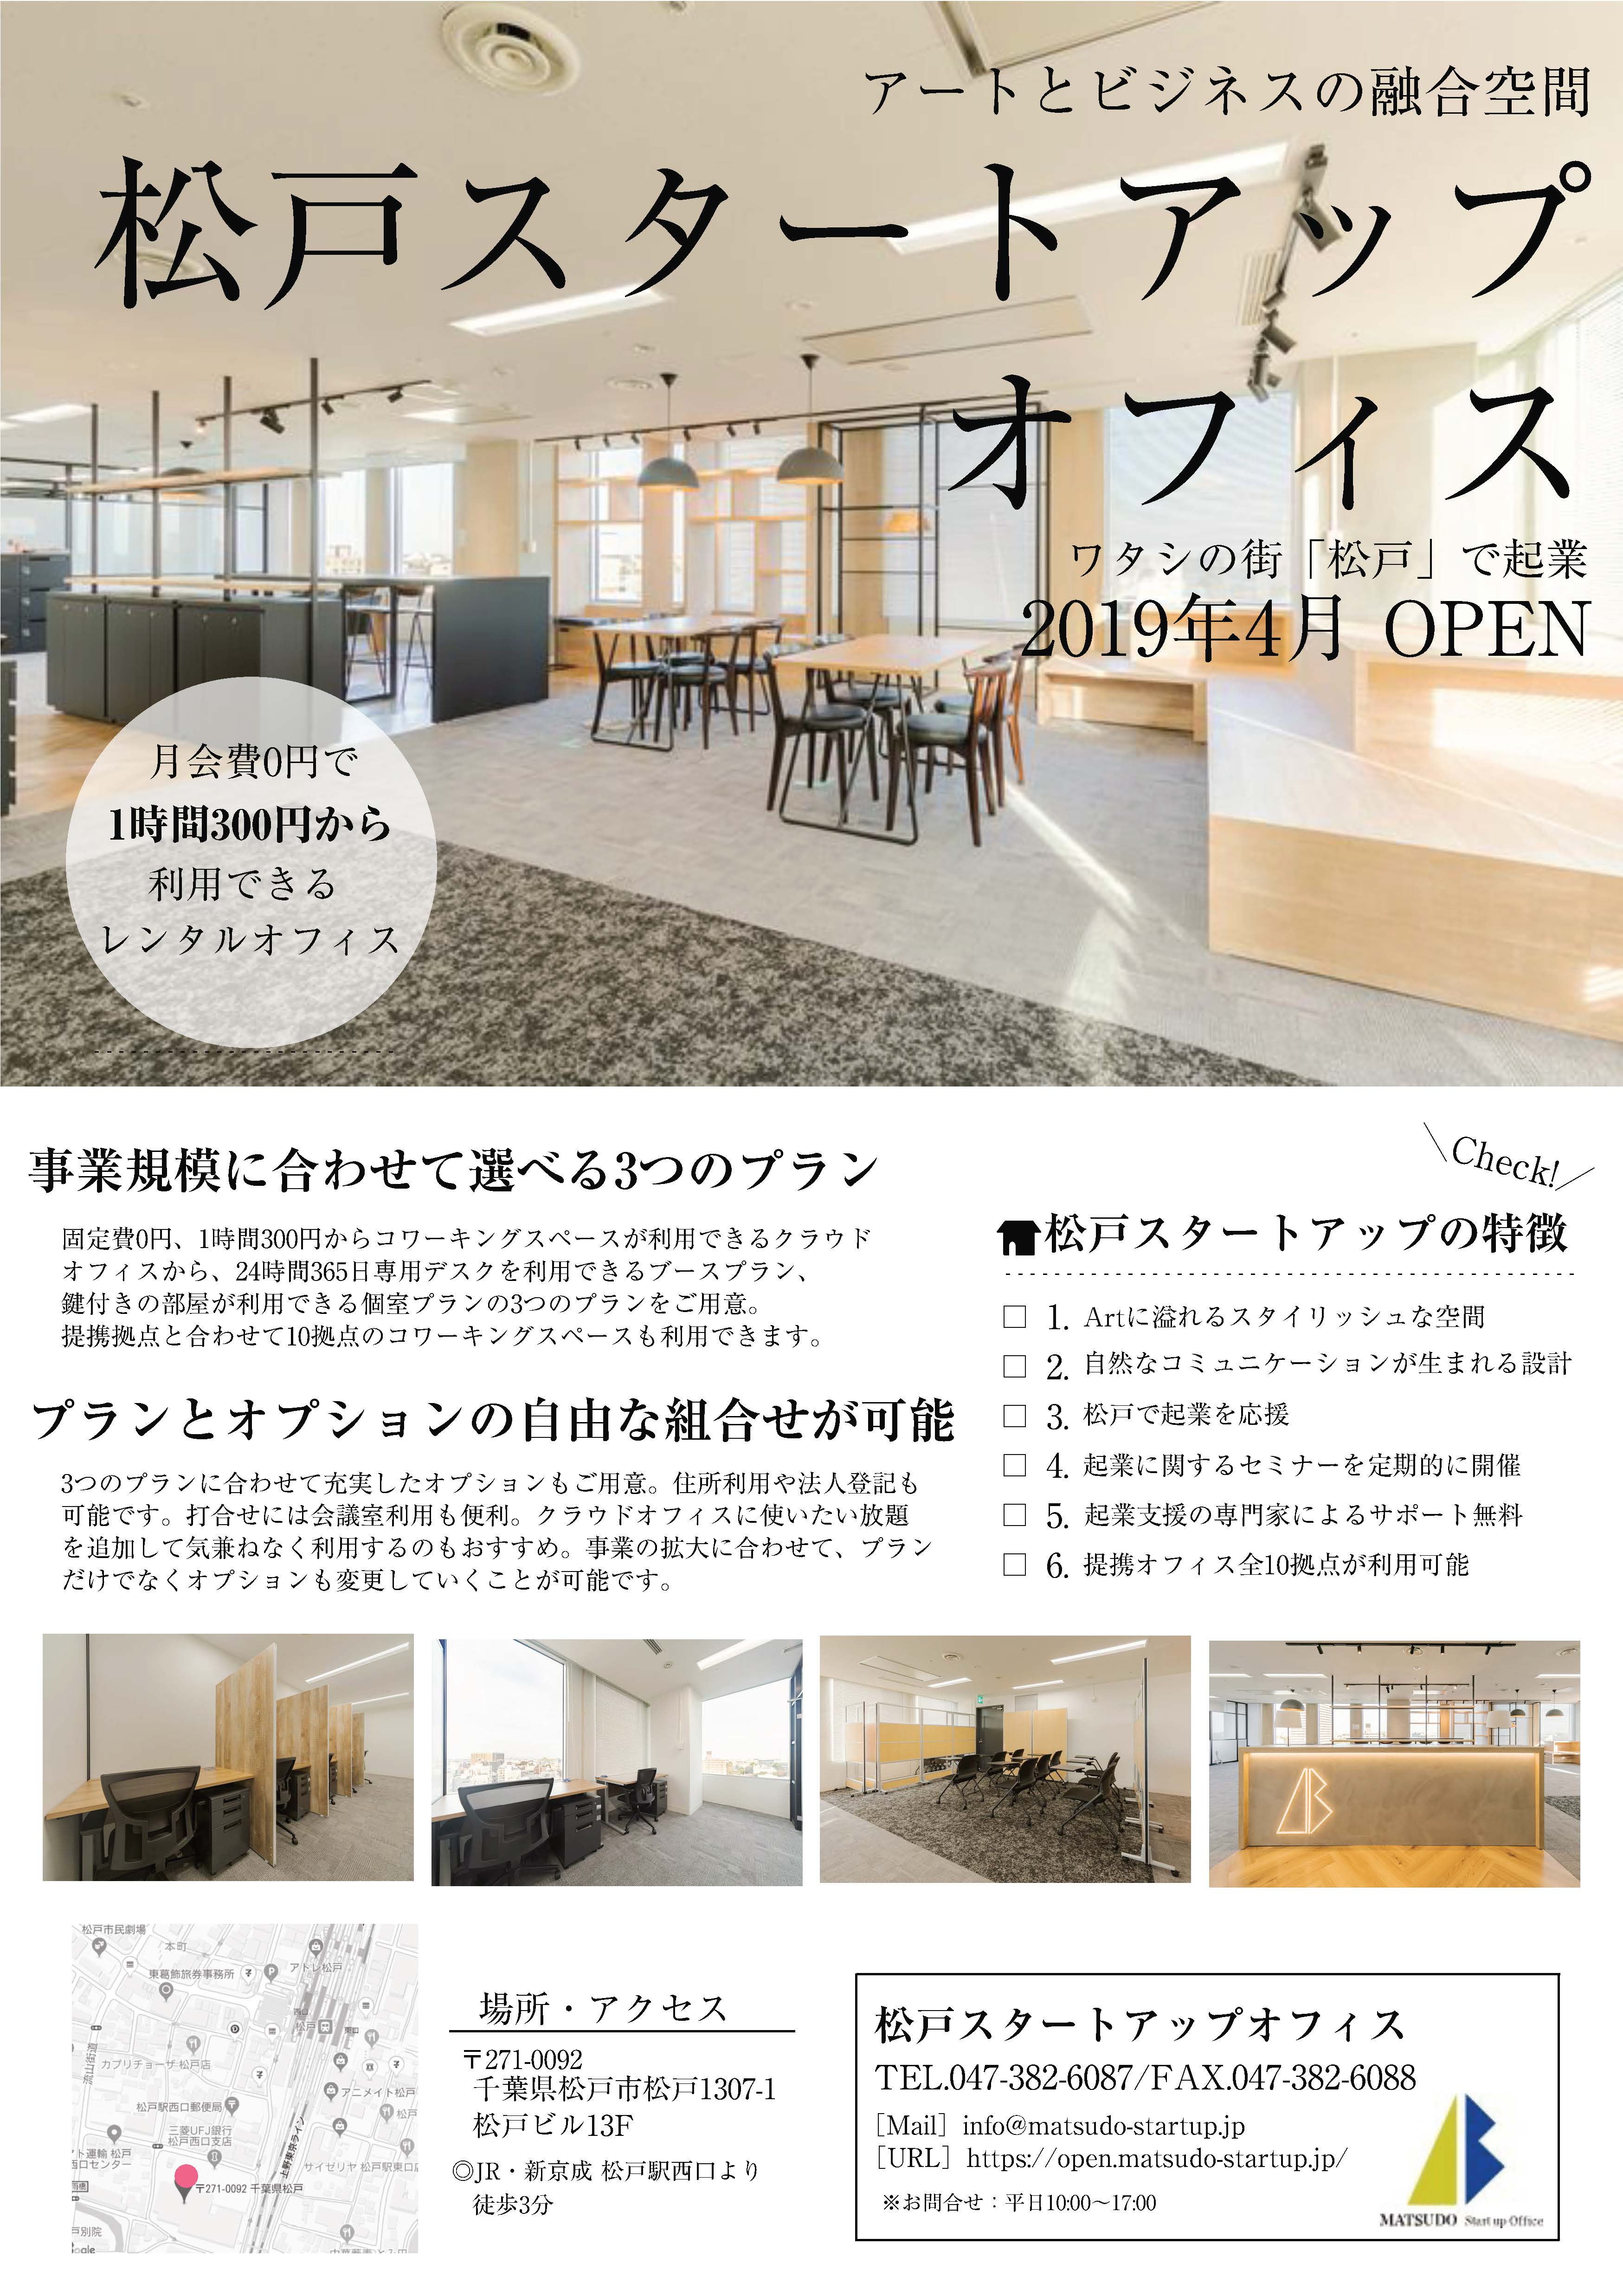 松戸スタートアップオフィス オープン 松戸市役所のプレスリリース